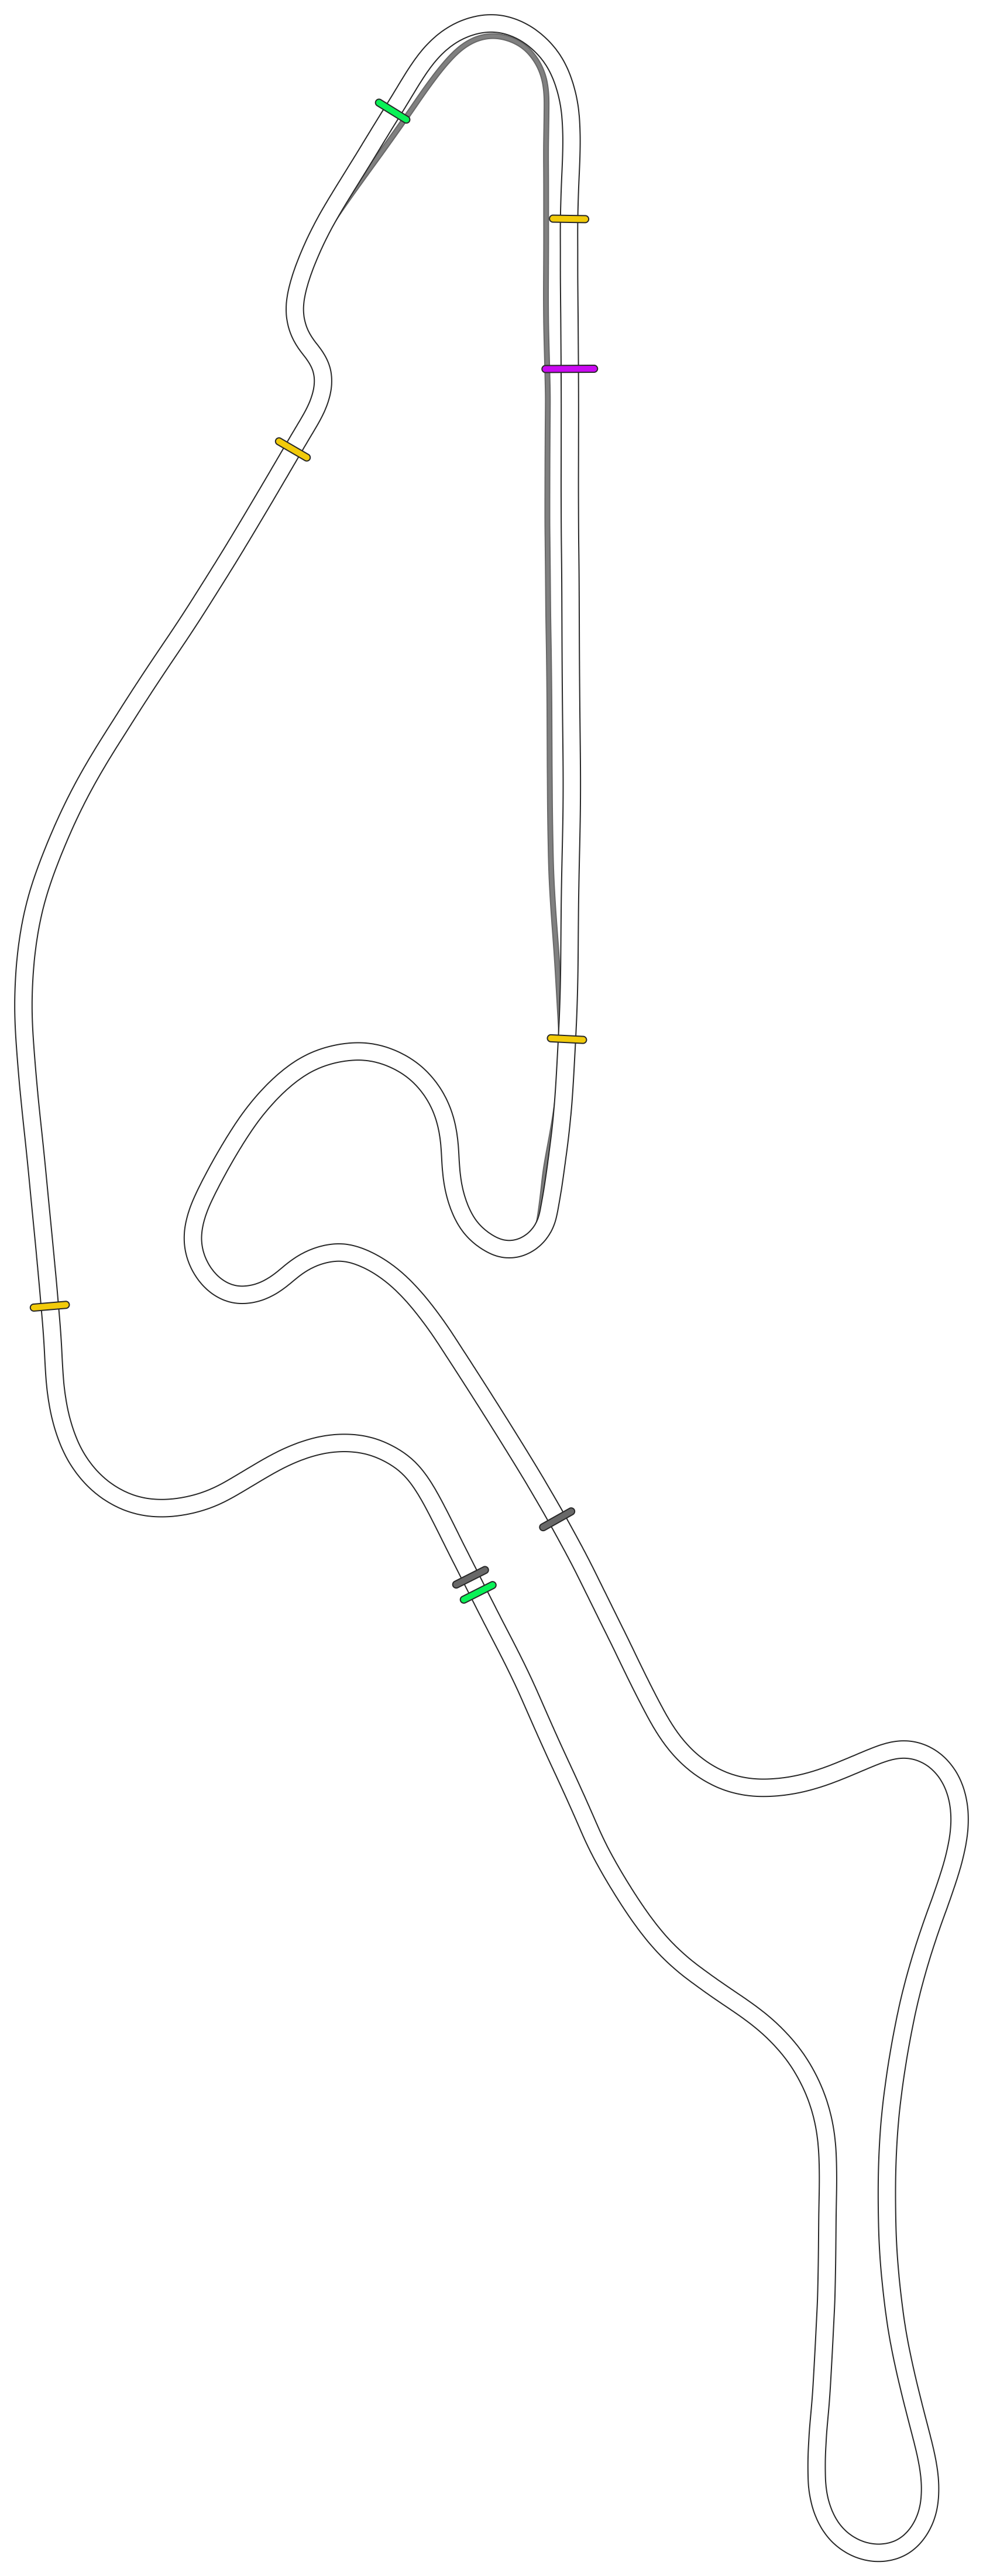 Nurburgring - GP